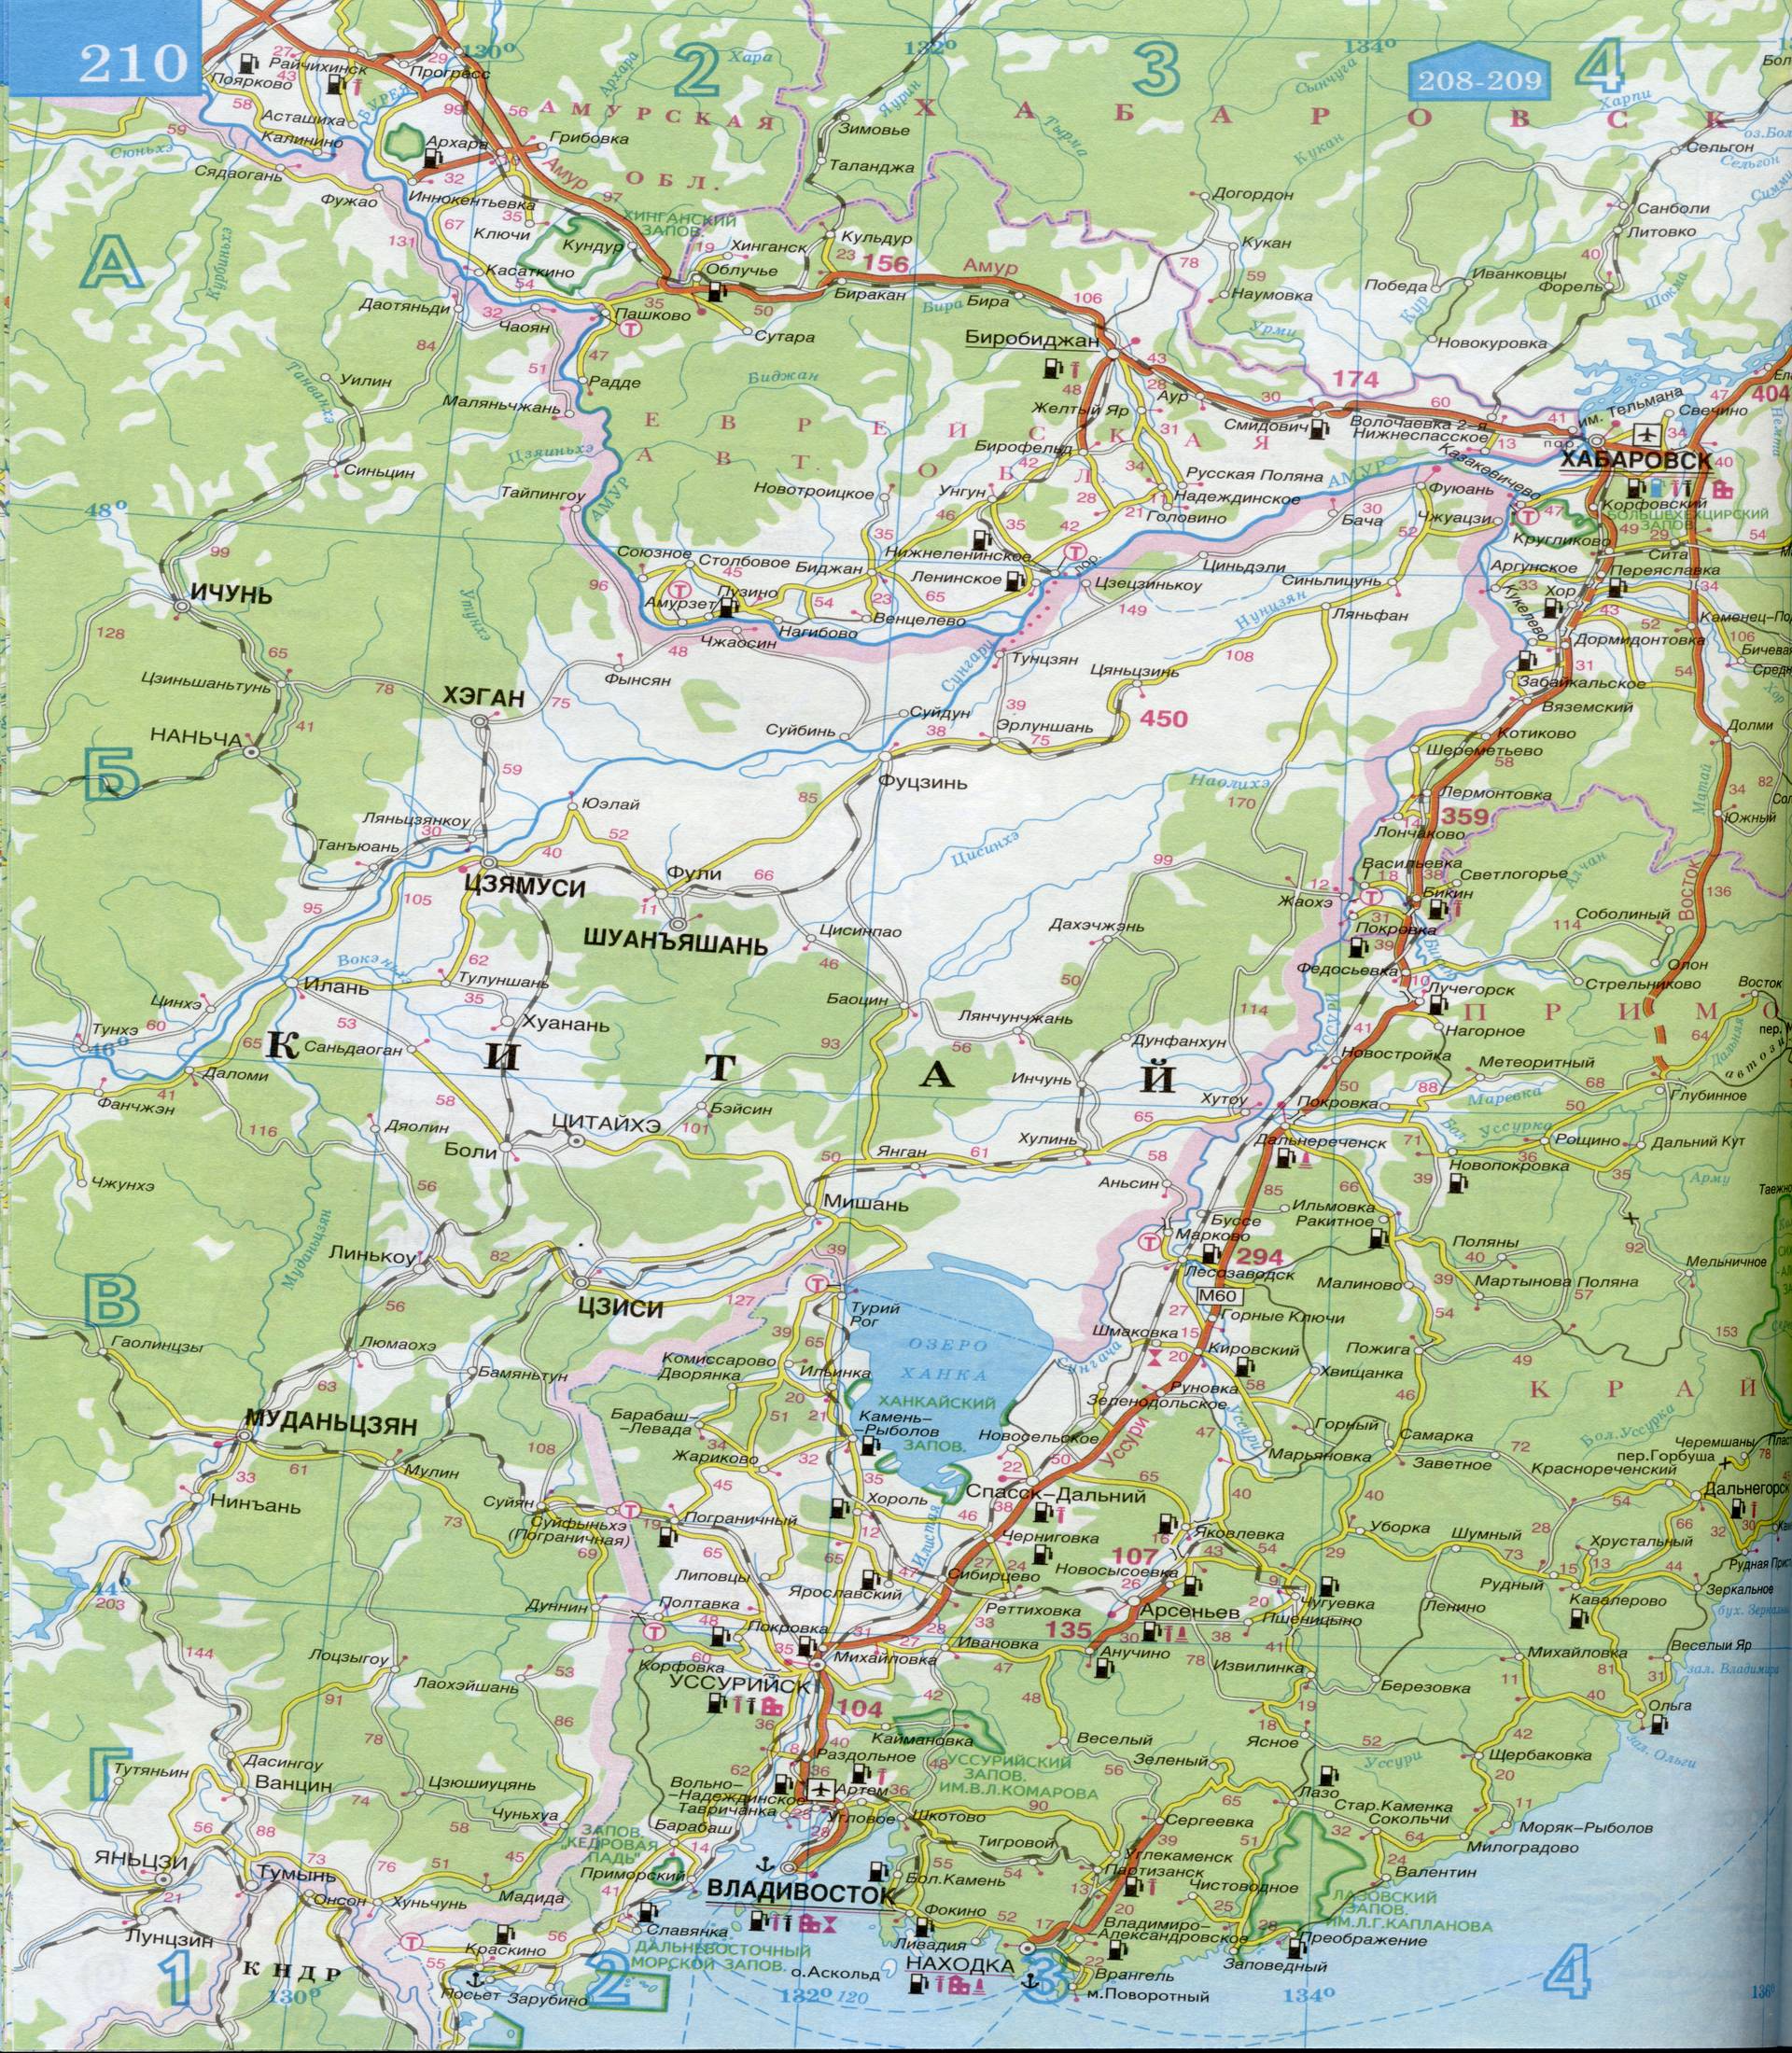 Карта Приморского края масштаба 1см:30км. Автомобильная карта - Приморский край, граница с Китаем, Кореей и Японией. Скачать карту Приморского края, A0 - 